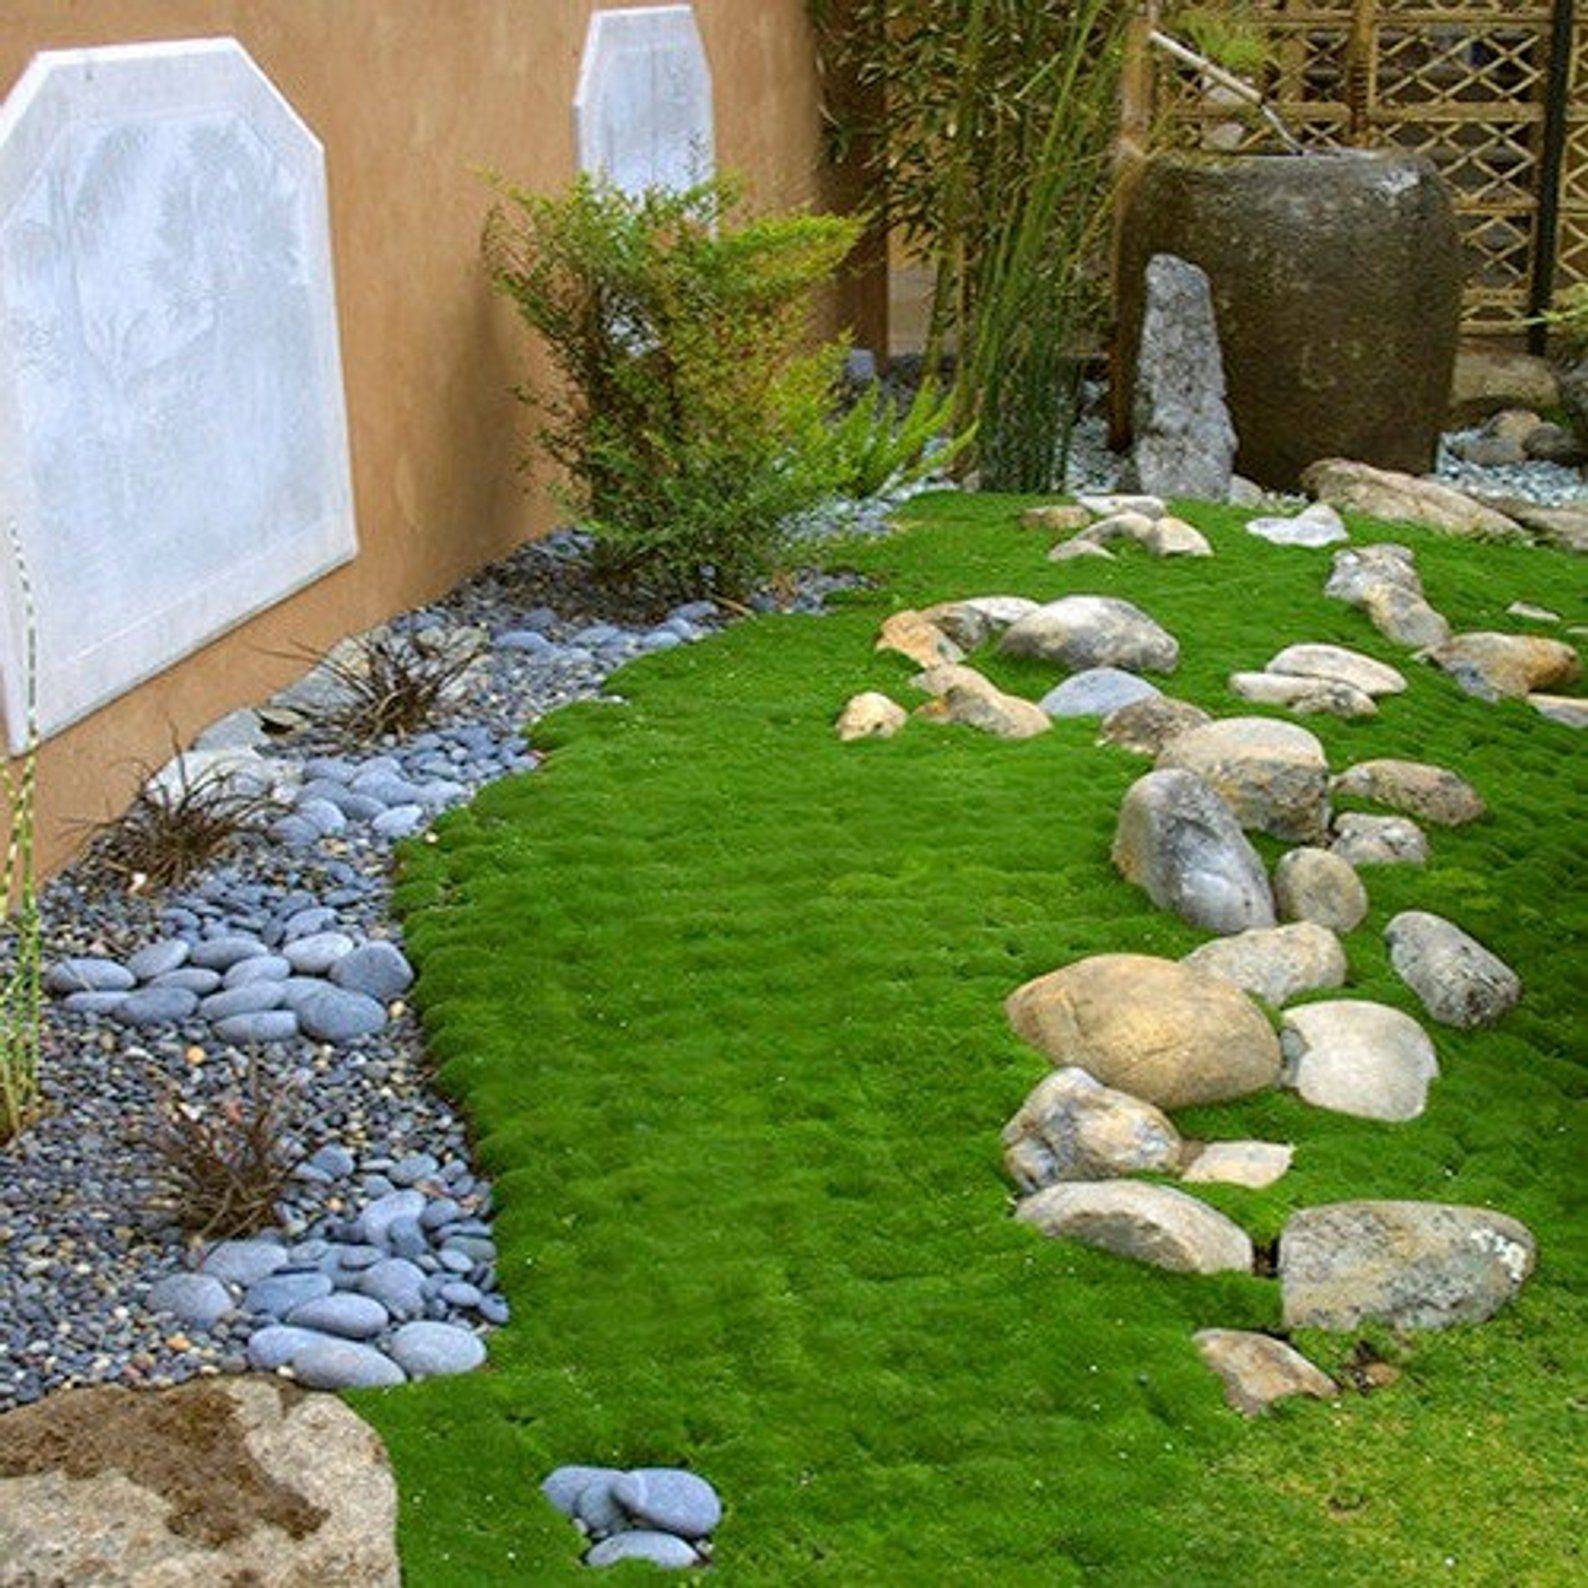 Moss Garden Ideas